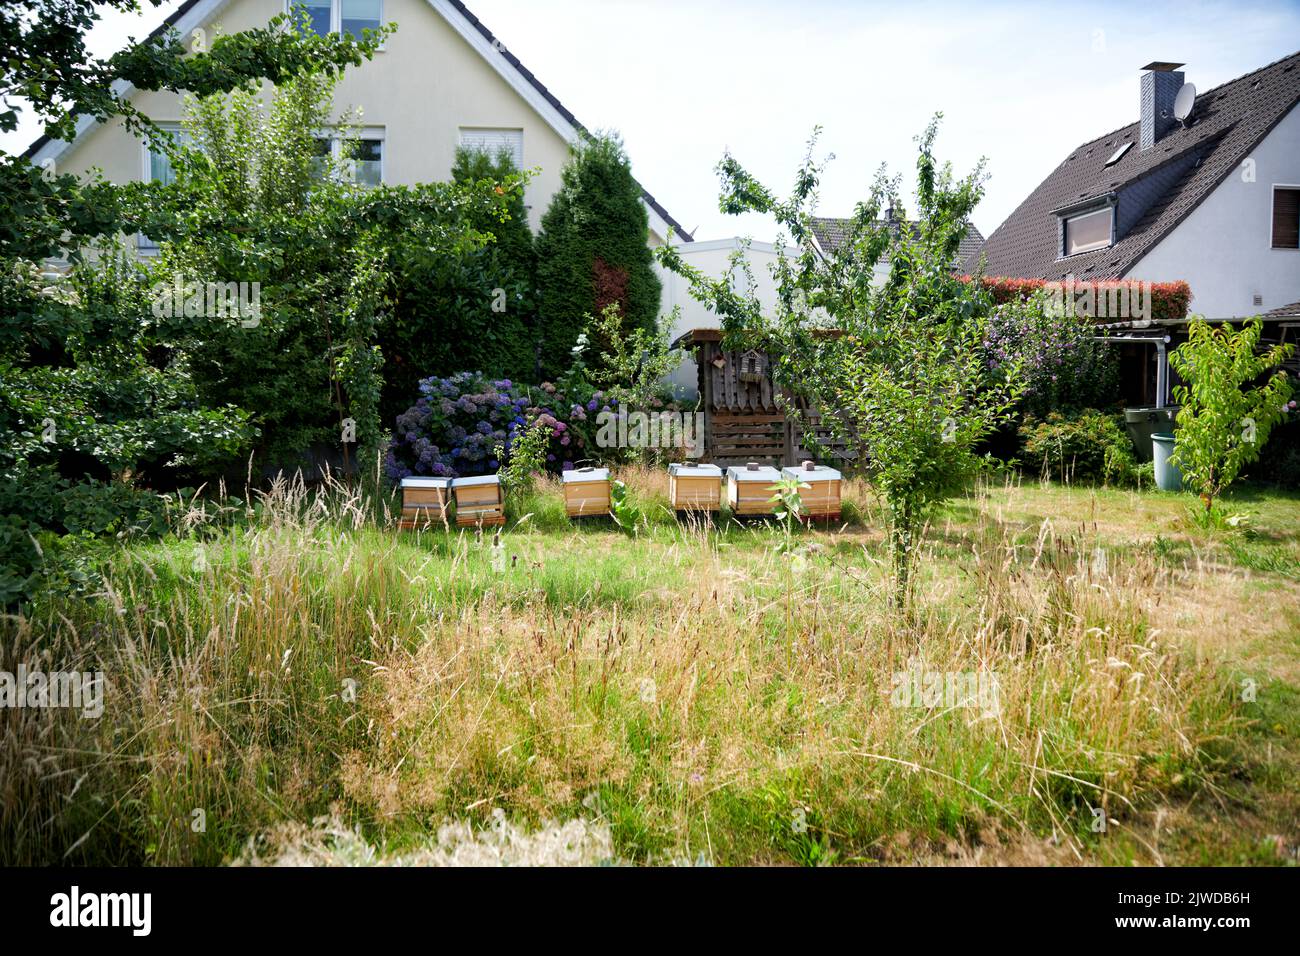 Bienenenstoecke stöhen auf einem Gartengelaende in einem Wohngebiet im hohen gras. Banque D'Images